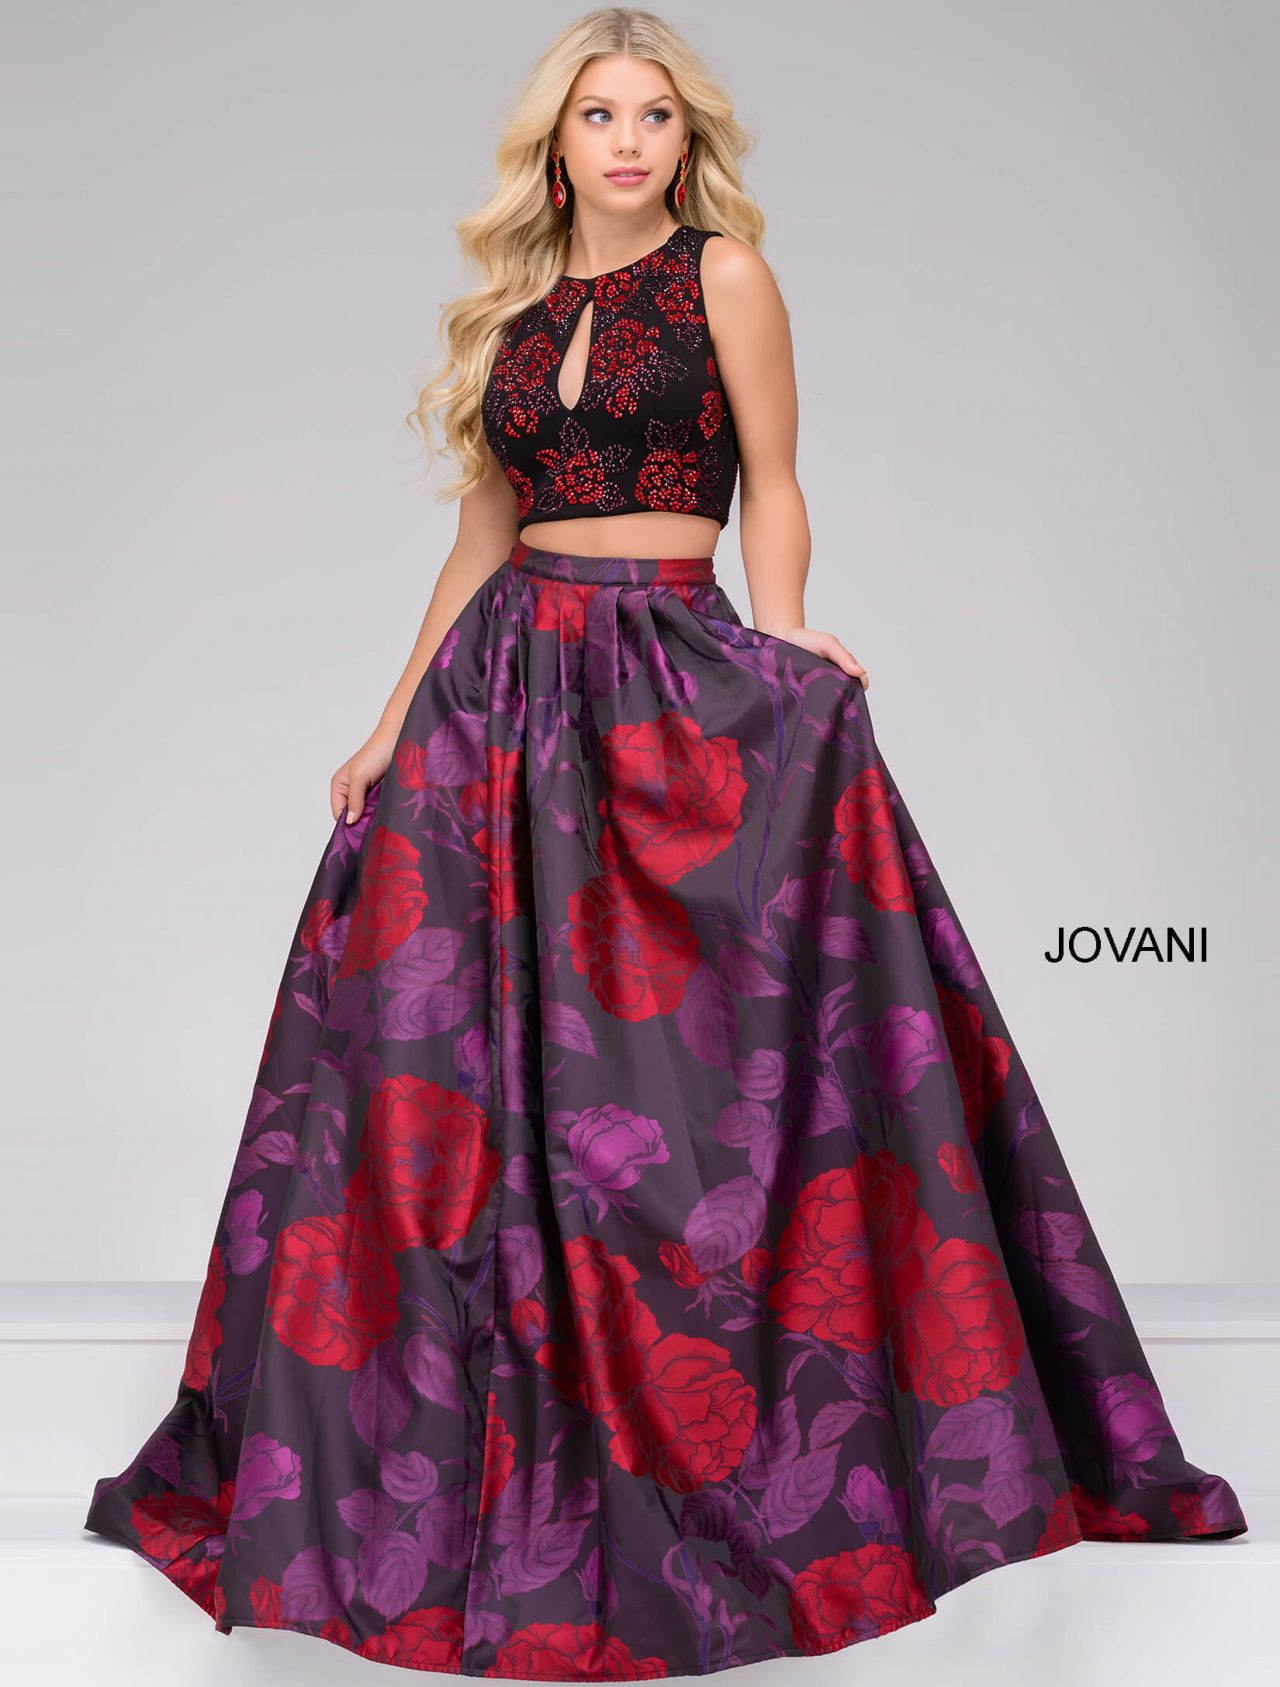 Kaylyn Slevin - Jovani Prom Dress Campaign 2017